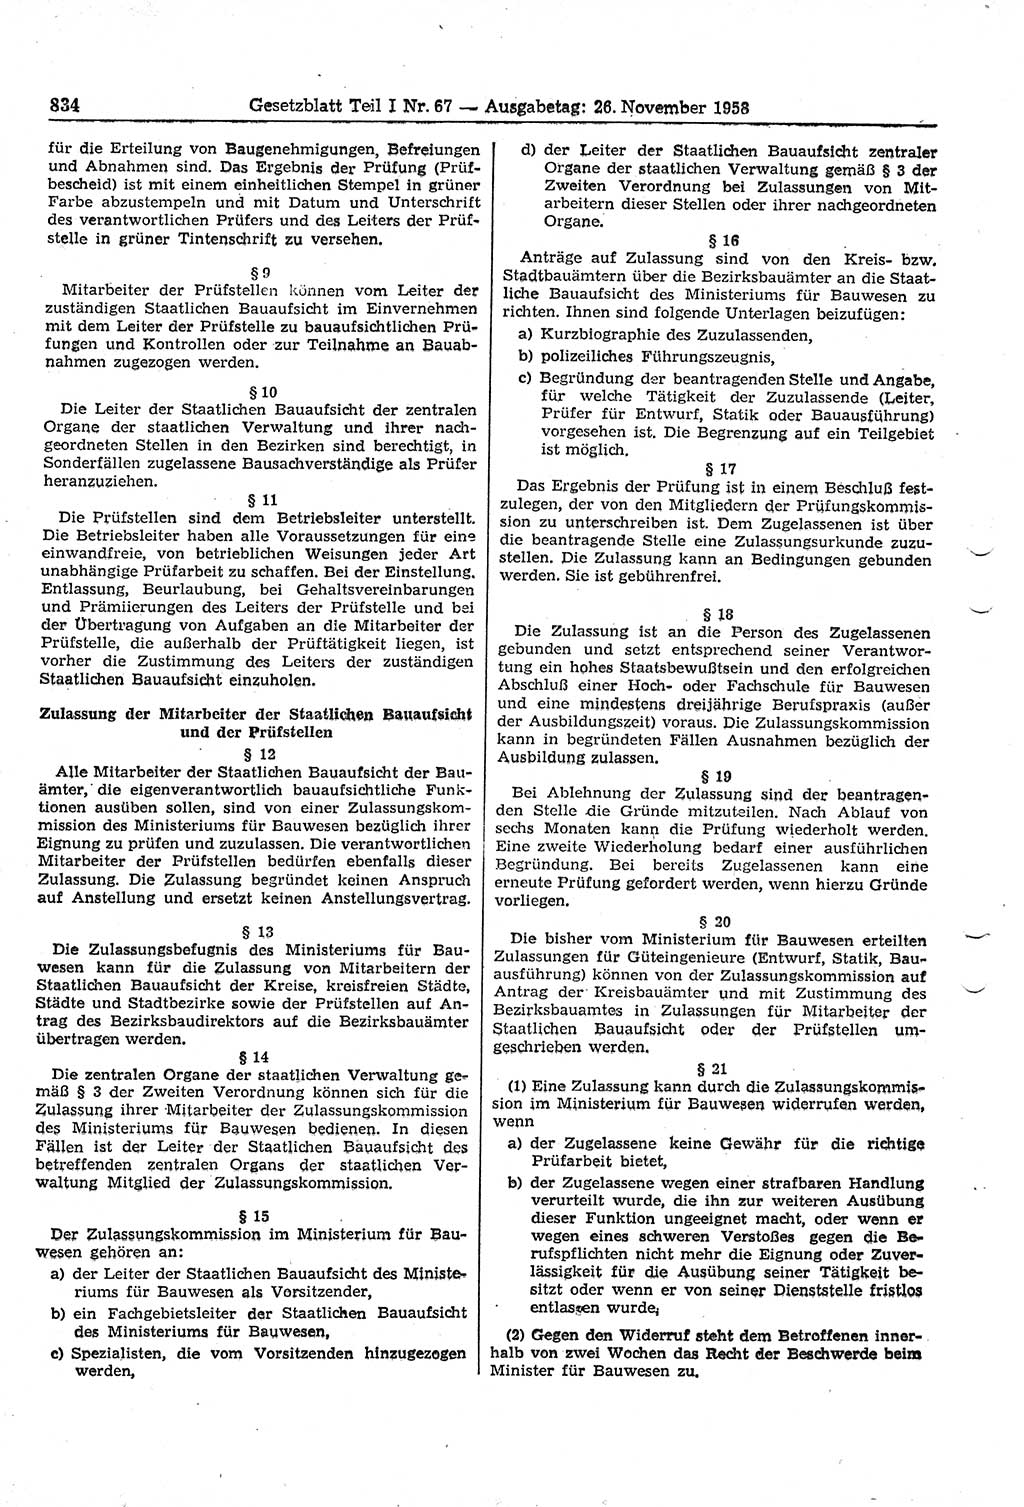 Gesetzblatt (GBl.) der Deutschen Demokratischen Republik (DDR) Teil Ⅰ 1958, Seite 834 (GBl. DDR Ⅰ 1958, S. 834)